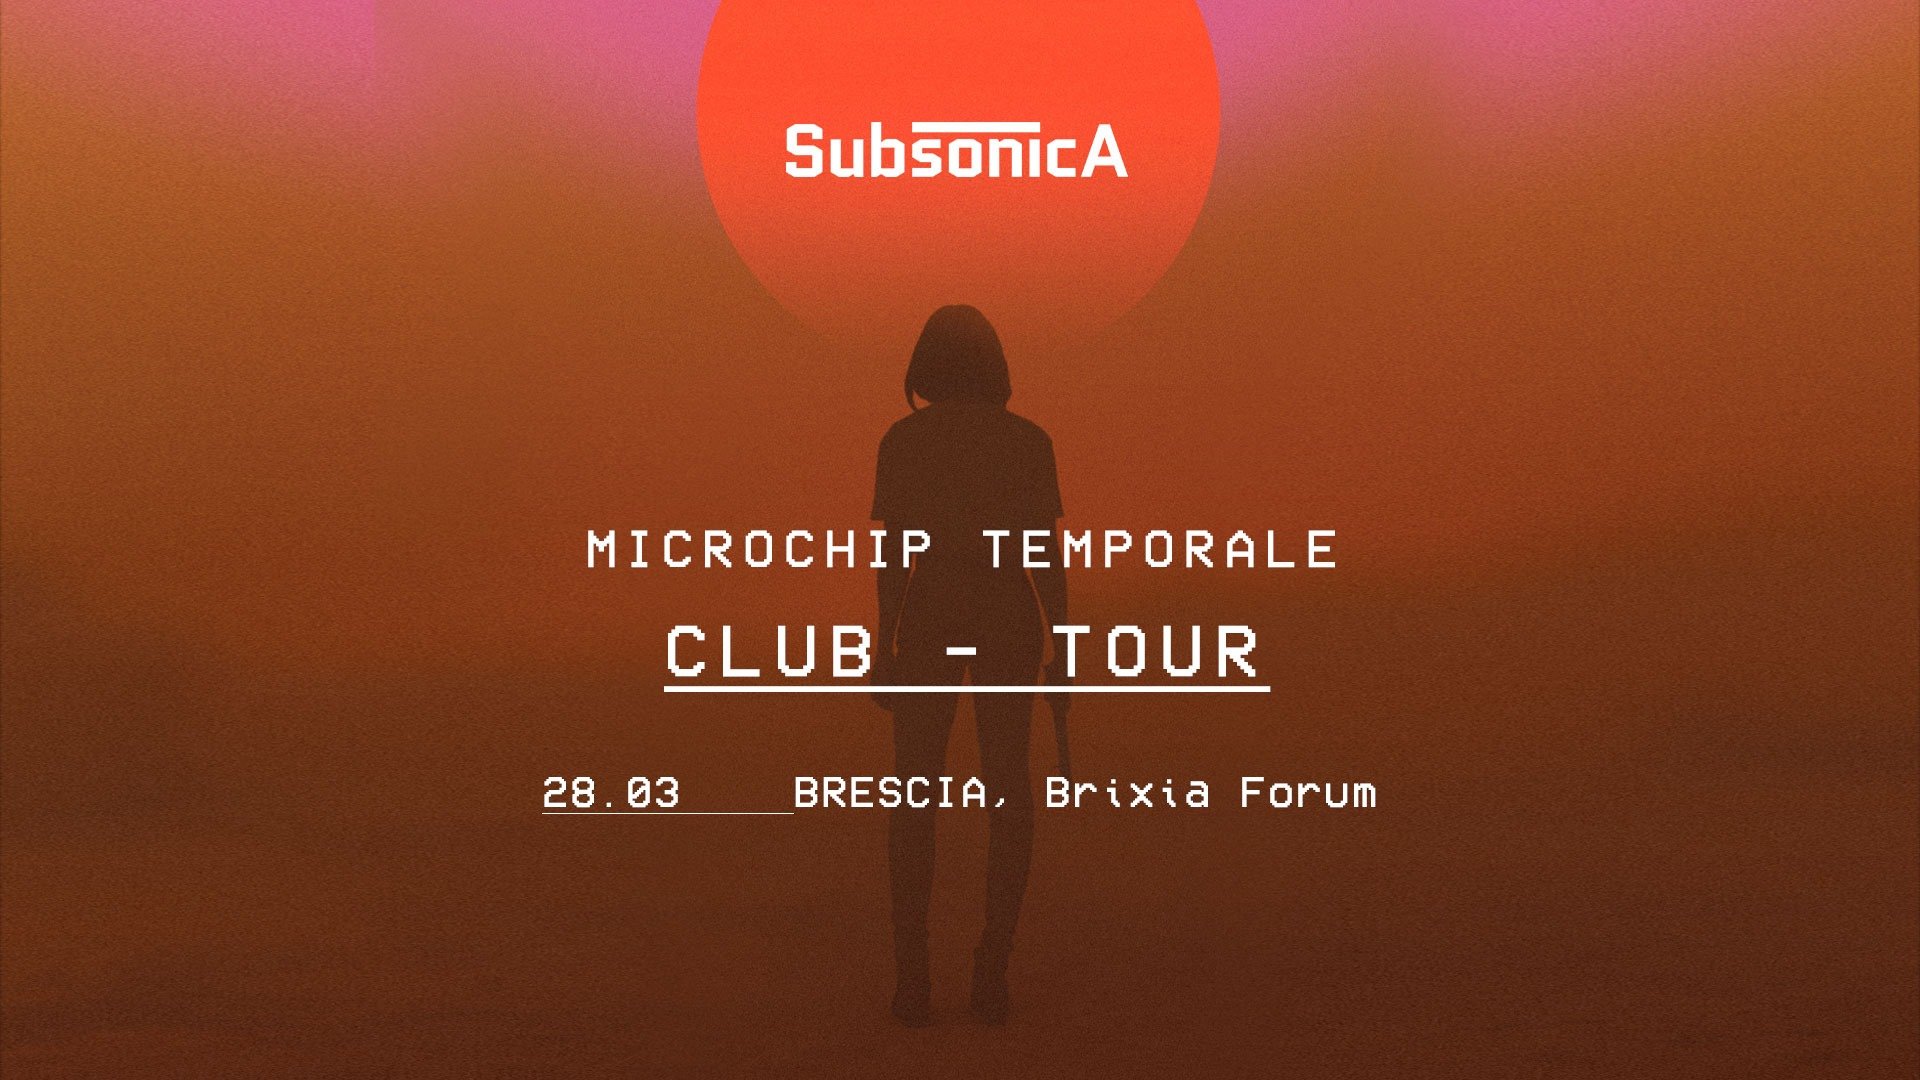 Brixia Forum Brescia, Subsonica, Microchip Temporale